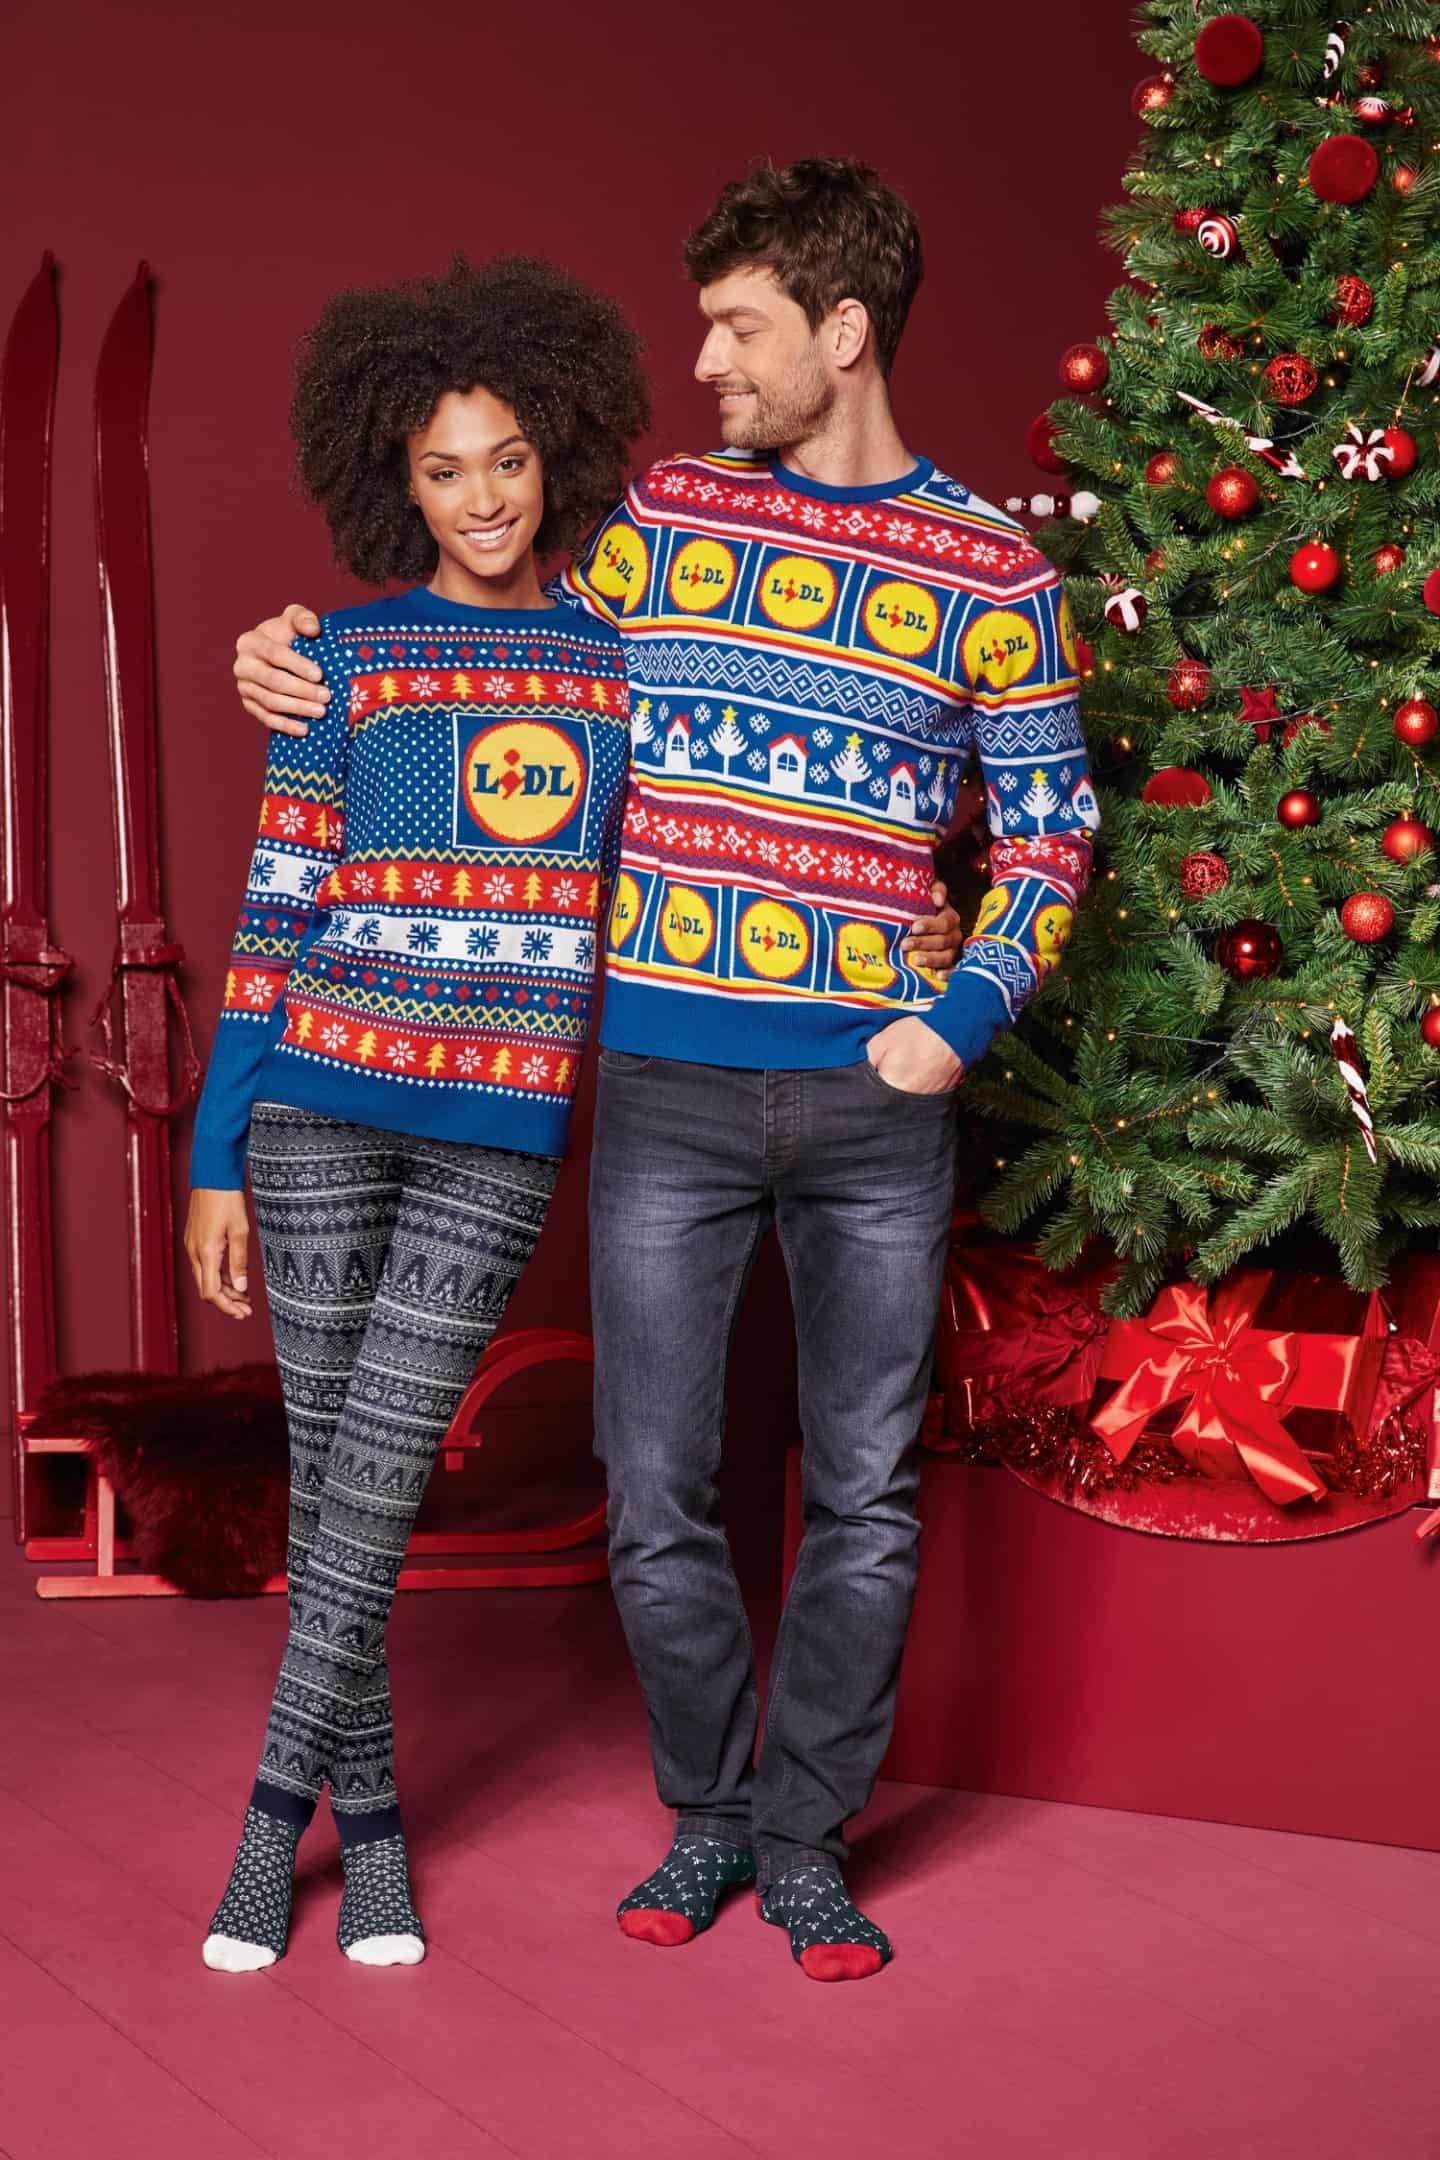 ressource Trænge ind Perle Vil du stå i kø for få den her julesweater fra Lidl? Discountbutik satser  stort på hypet tøj for at kapre kunder | erhvervplus.dk